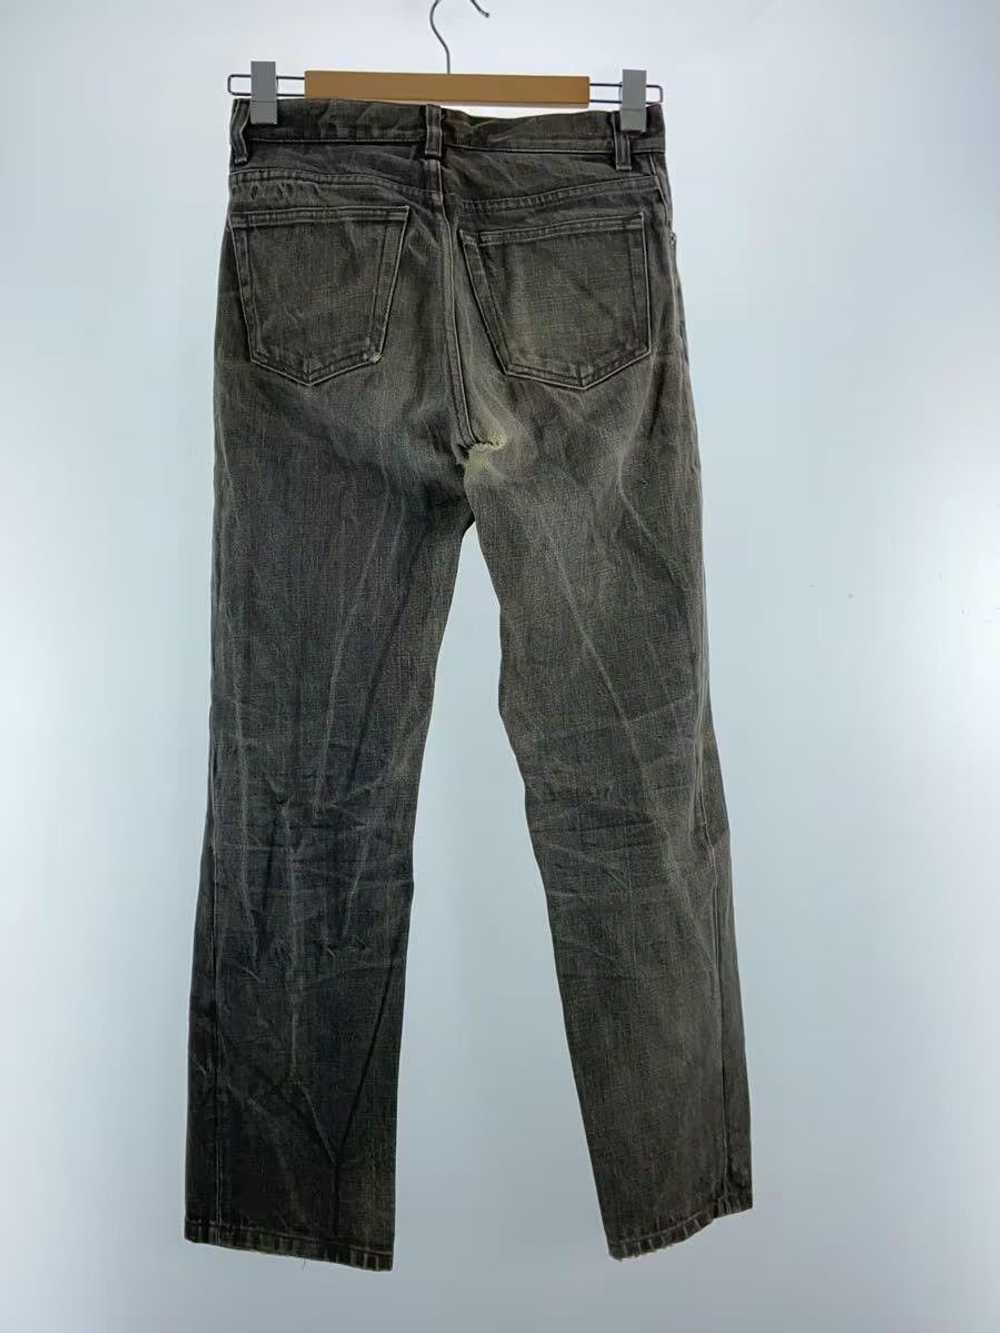 Helmut Lang 1990s Straight Leg Denim Jeans - image 2